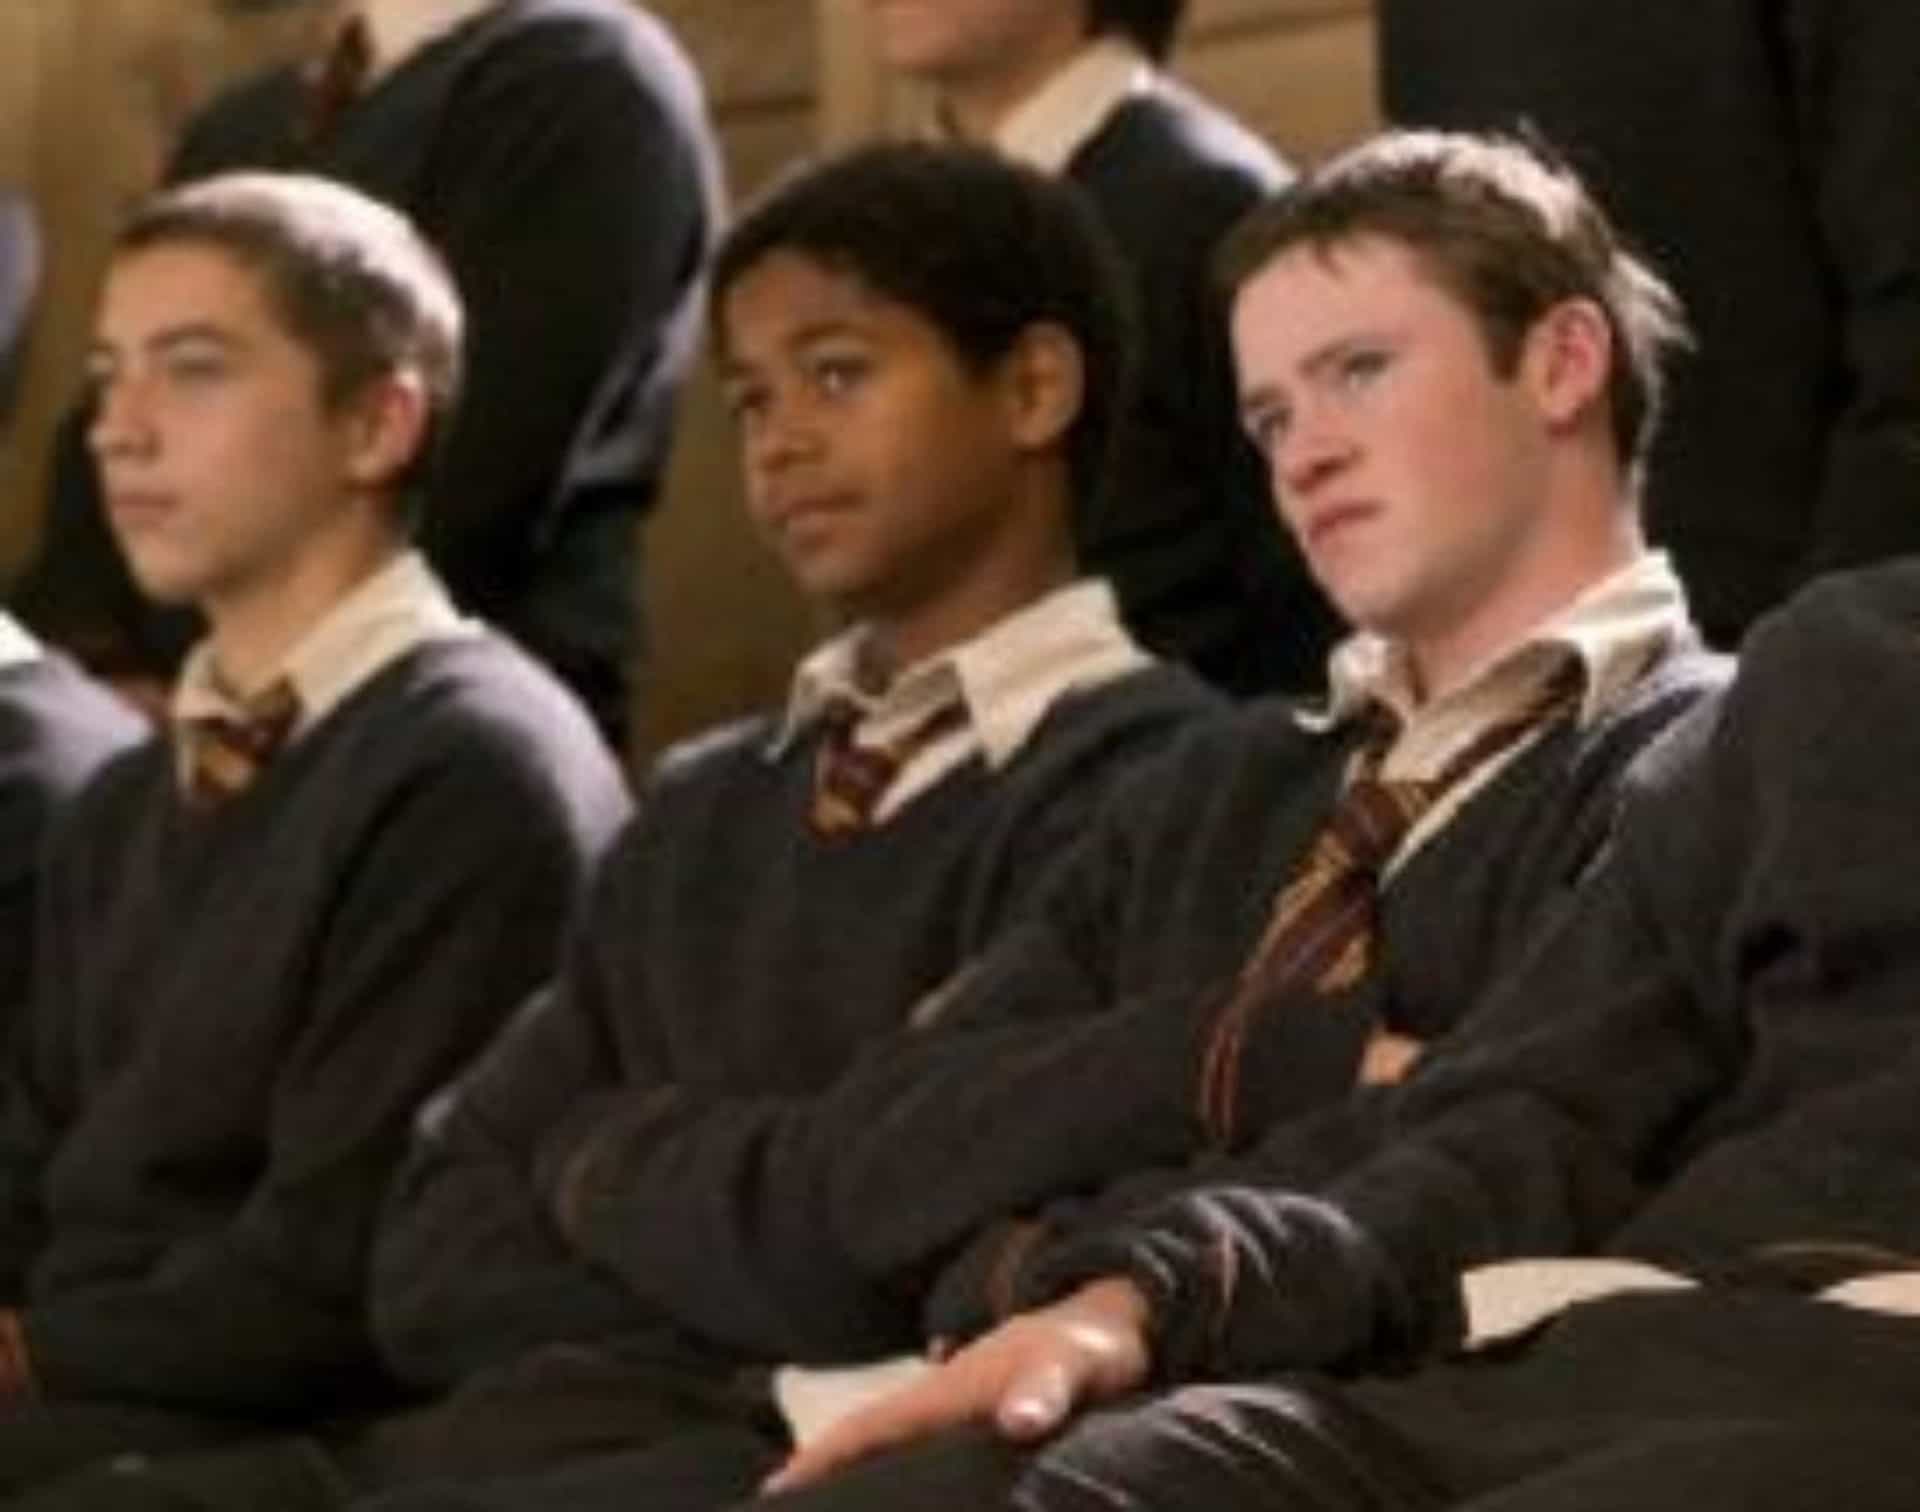 <p>Alfred Enoch interpretó a Dean Thomas y apareció en siete de las películas de "Harry Potter". Aquí aparece en "Harry Potter and the Goblet of Fire" (2005).</p>